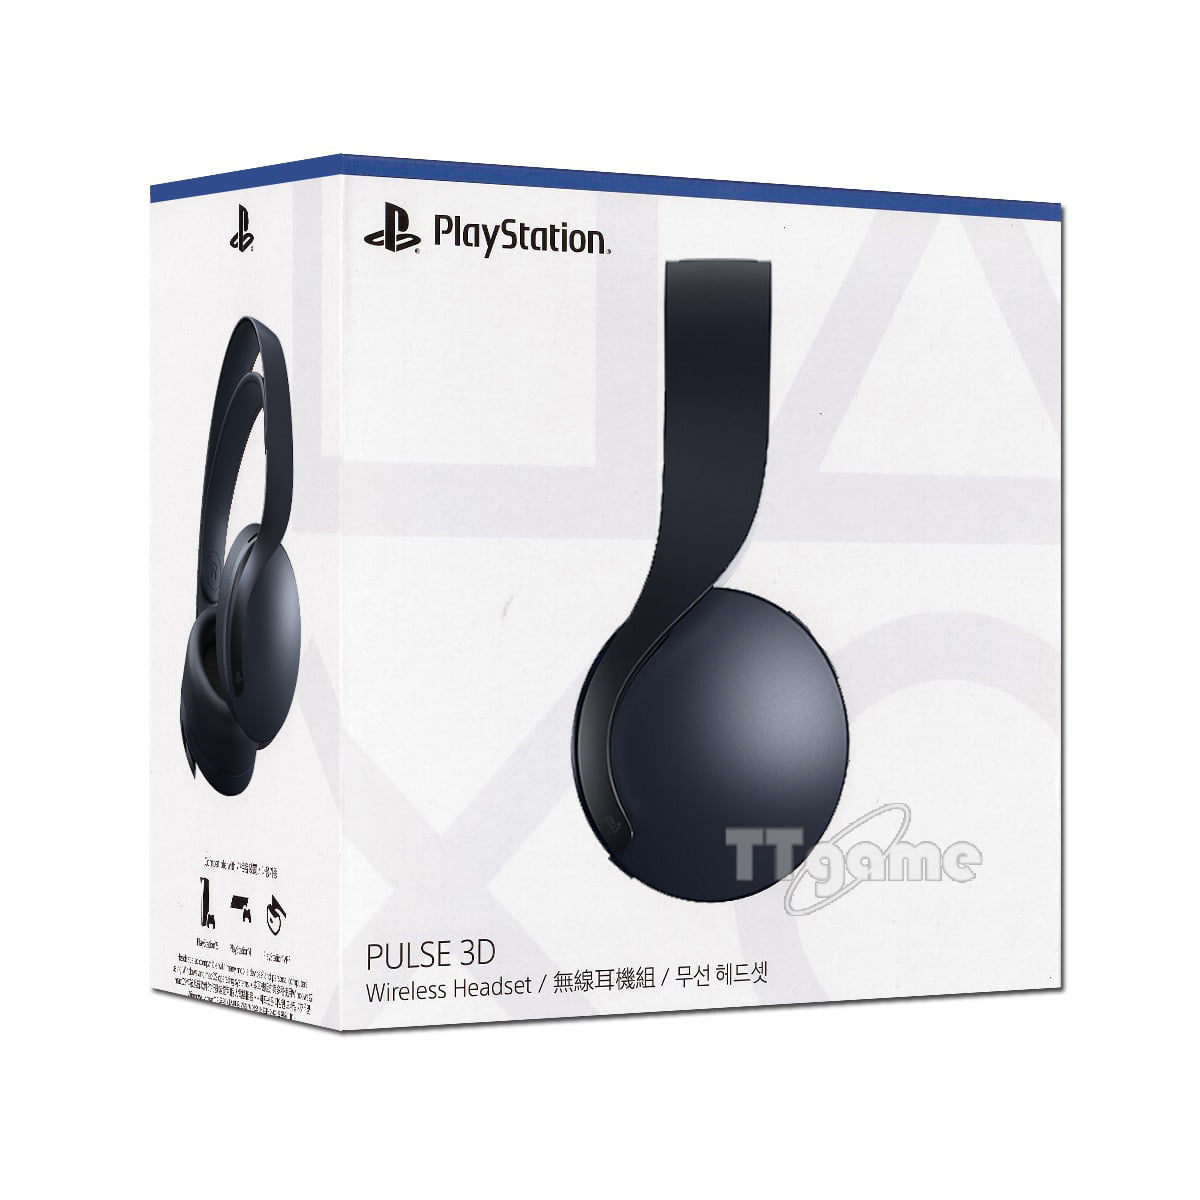 PS5 소니정품 PULSE 3D 펄스 무선헤드셋 - 블랙